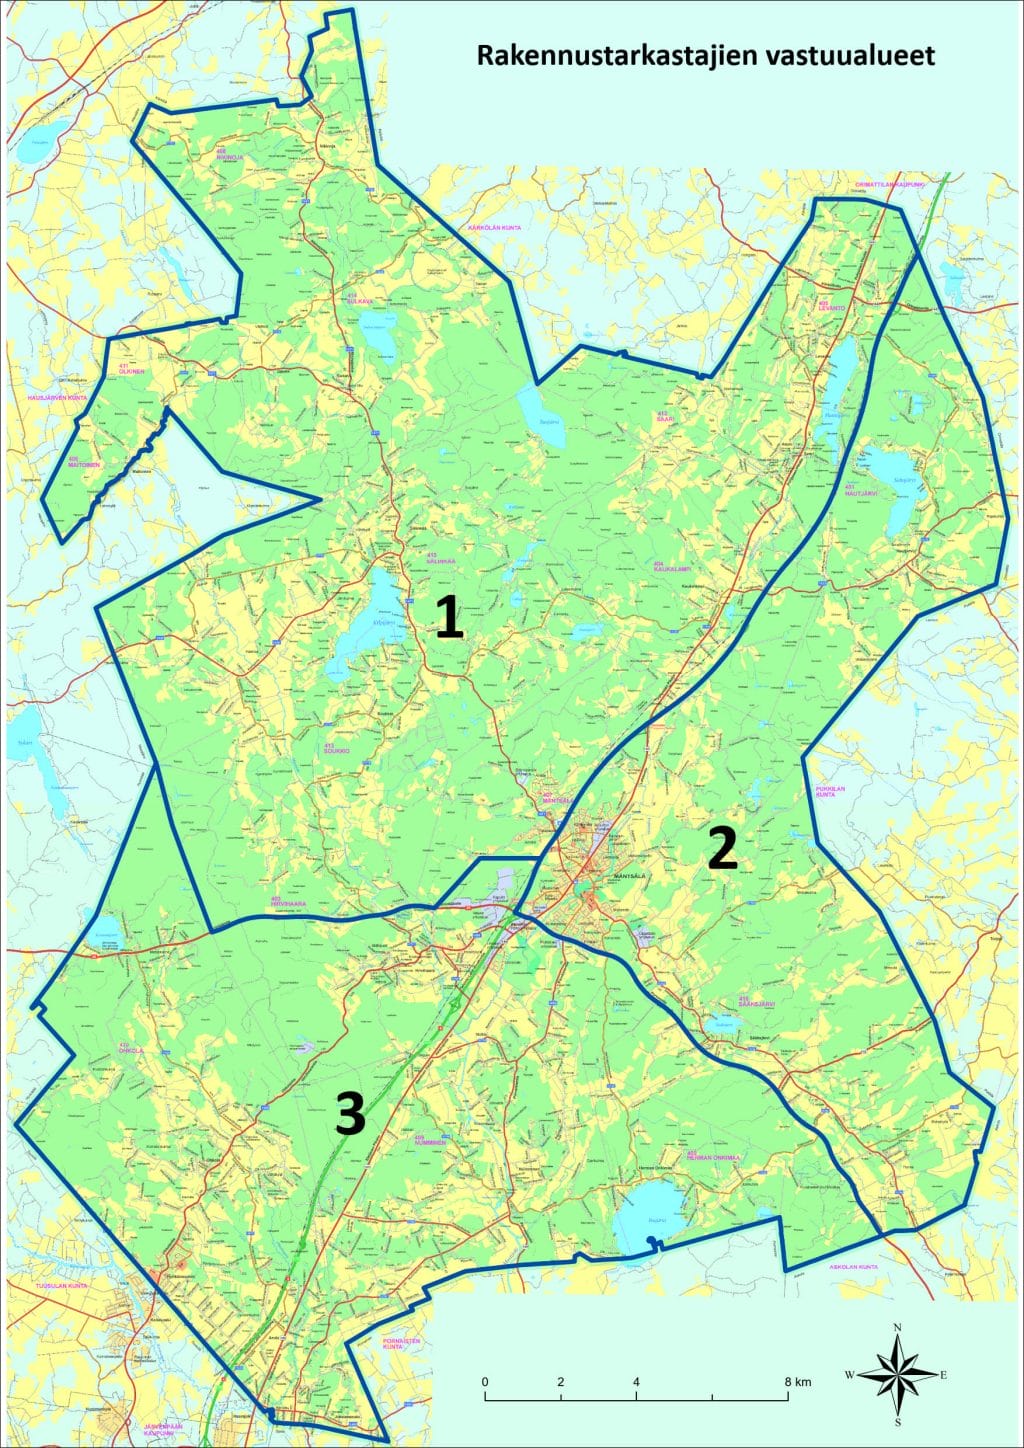 Rakennusvalvonnan vastuualuekartta: Luoteis-Mäntsälä kuuluu vastuualueeseen 1, koillis- ja kaakkois-Mäntsälä kuuluu vastuualueeseen 2, ja lounais-Mäntsälä vastuualue 3.